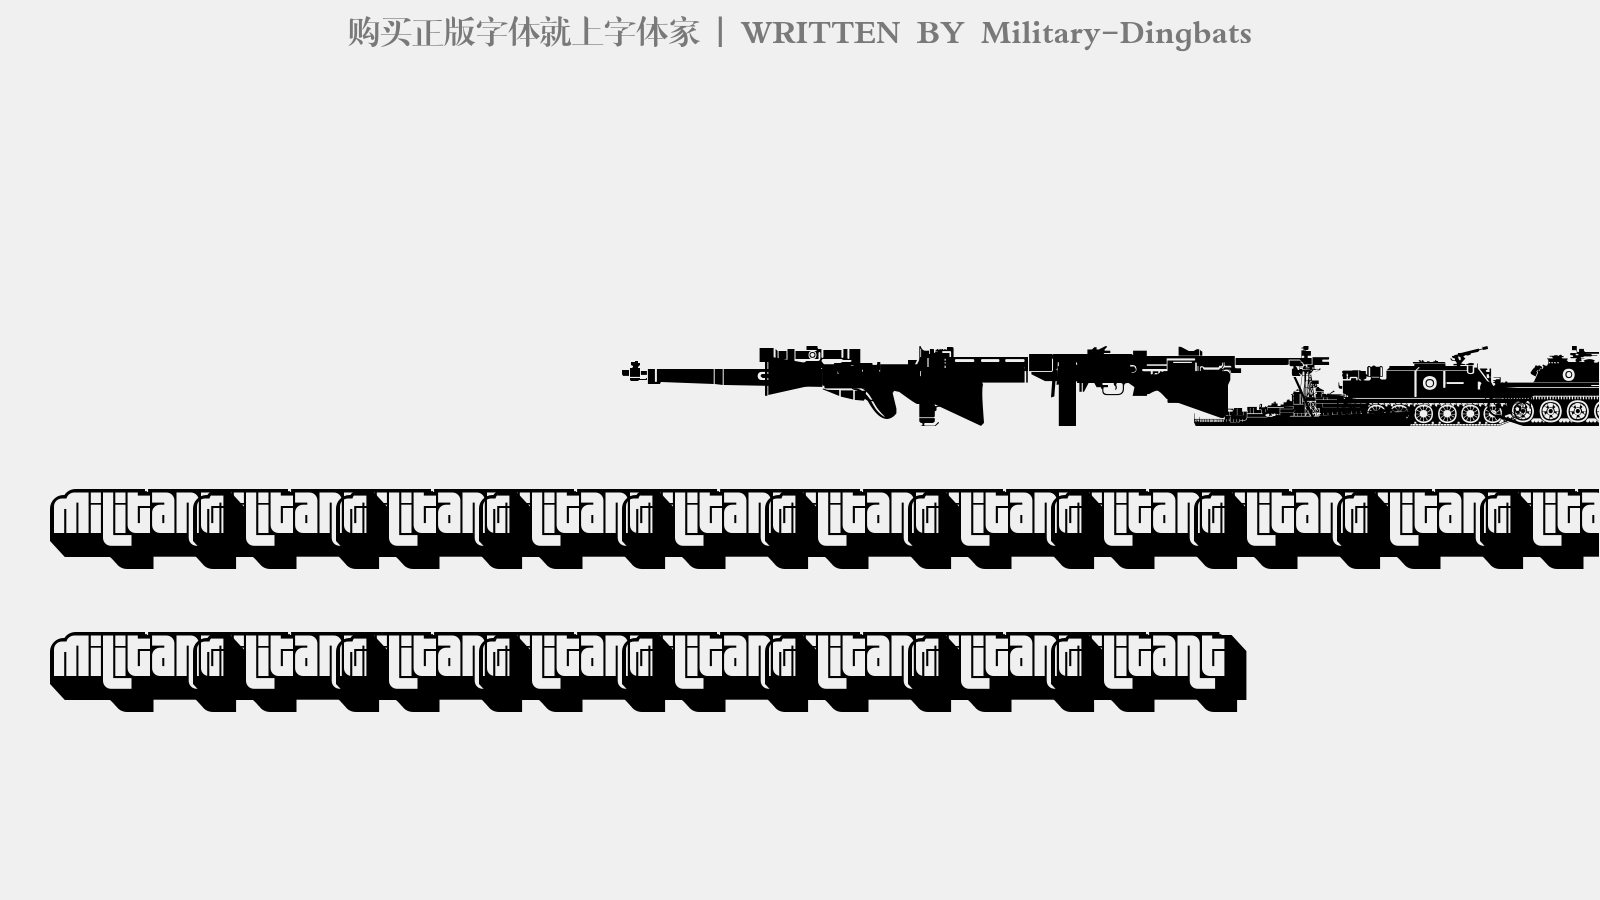 Military-Dingbats - 大写字母/小写字母/数字